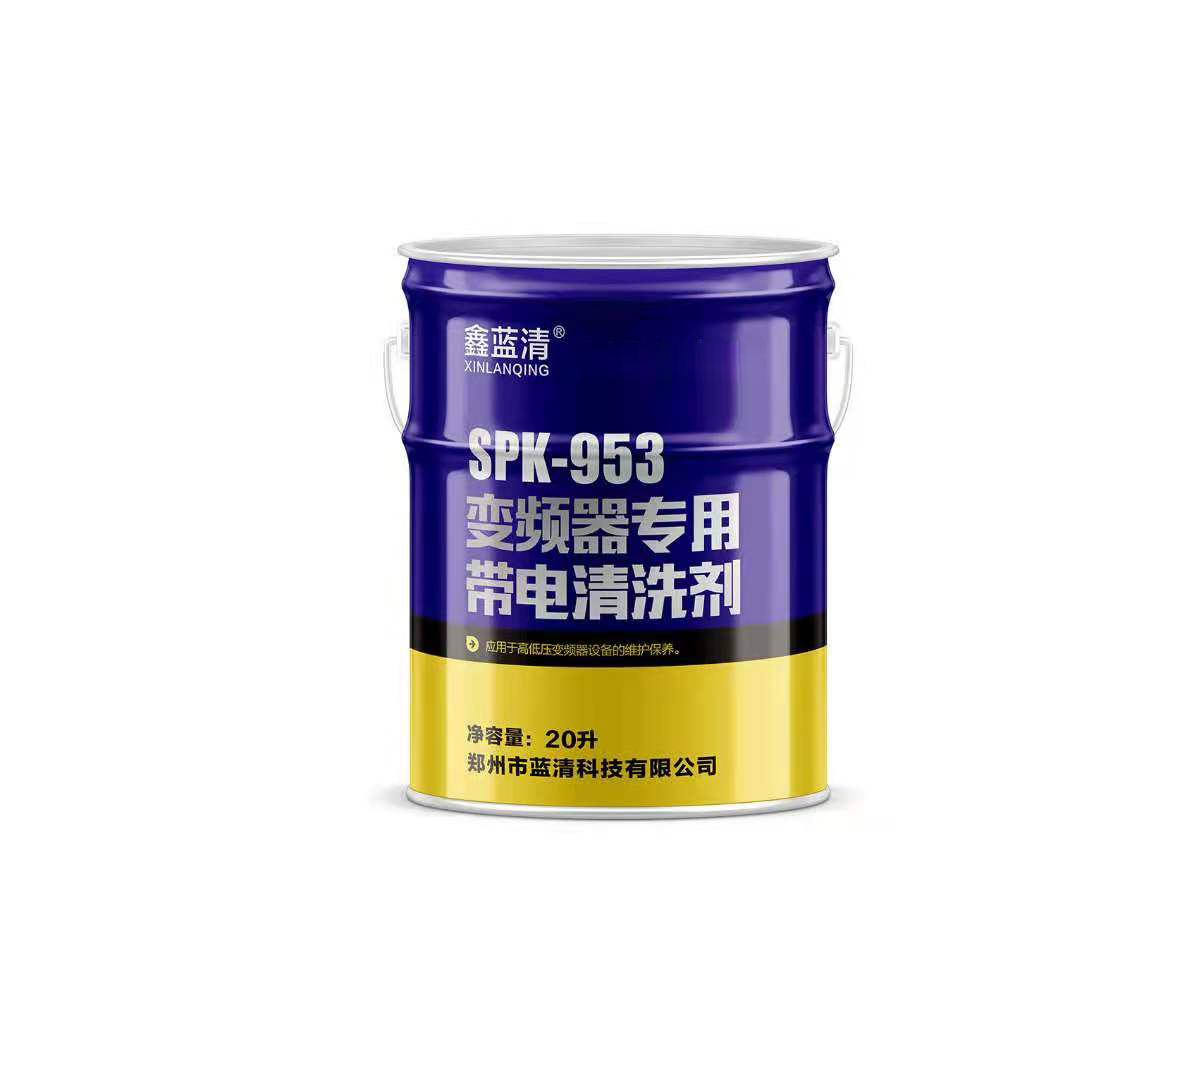 鑫蓝清SPK-953 高低压变频器专用带电清洗剂设备油污粉尘污染清除